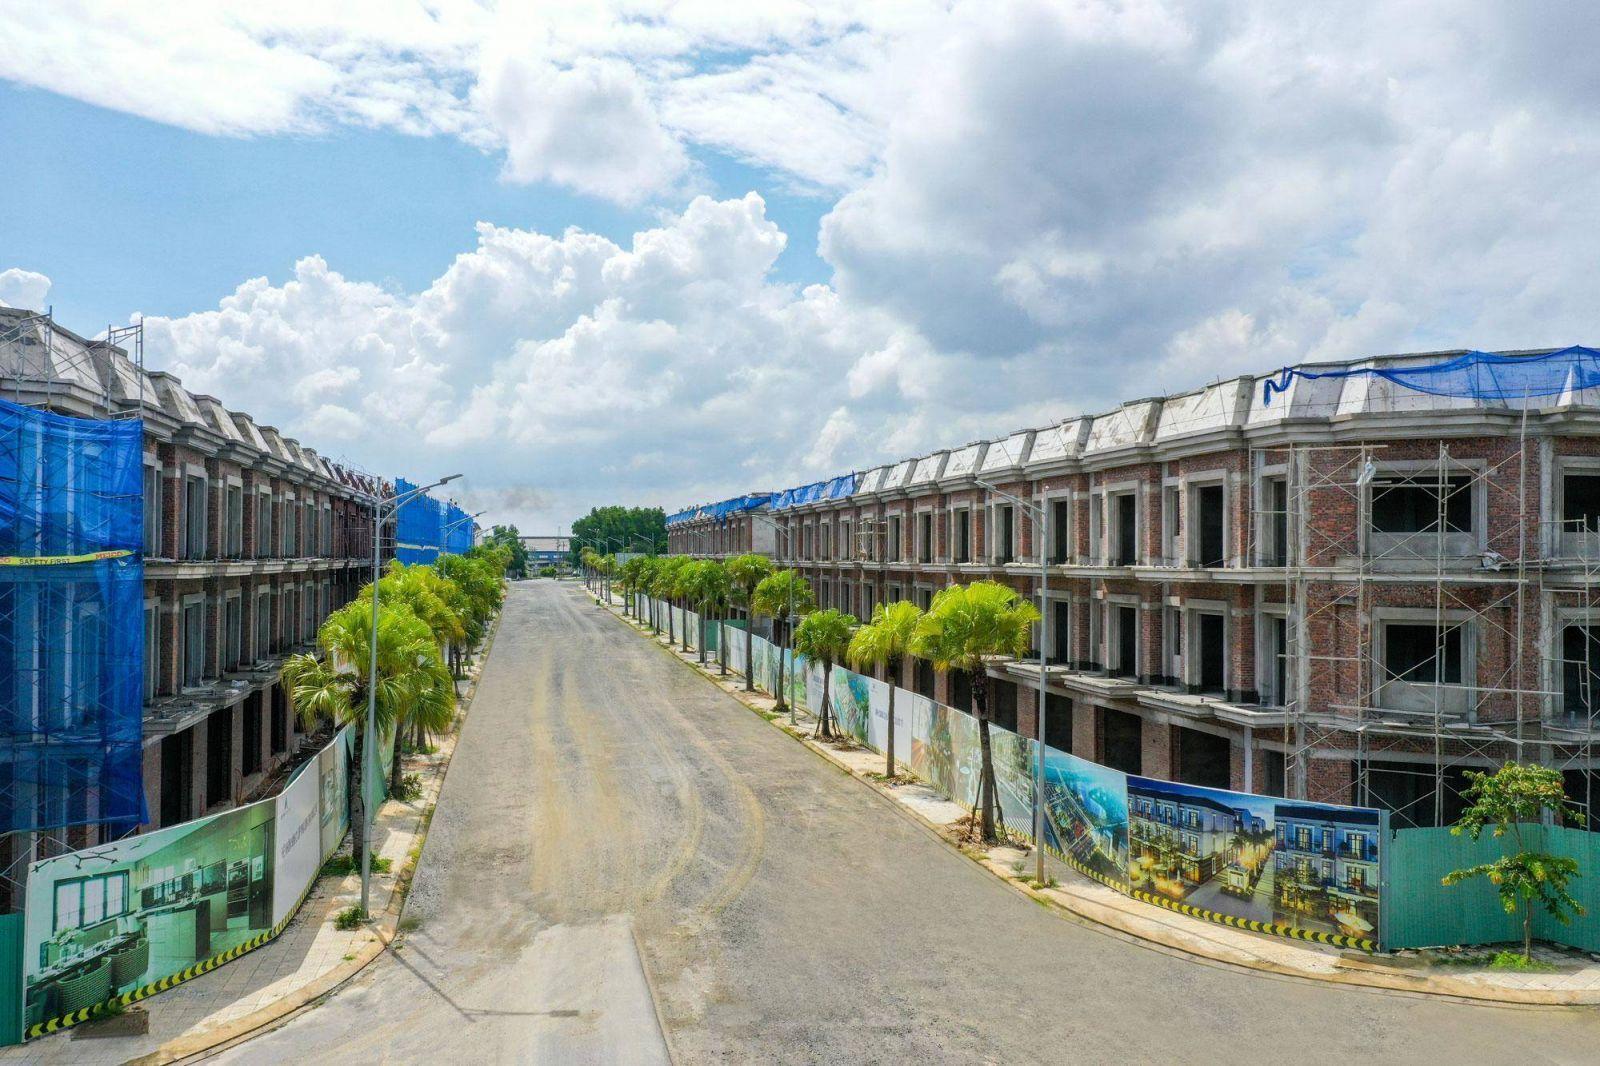 ĐẤT XANH MIỀN TRUNG BÀN GIAO NHÀ DỰ ÁN LAKESIDE INFINITY - Viet Nam Smart City